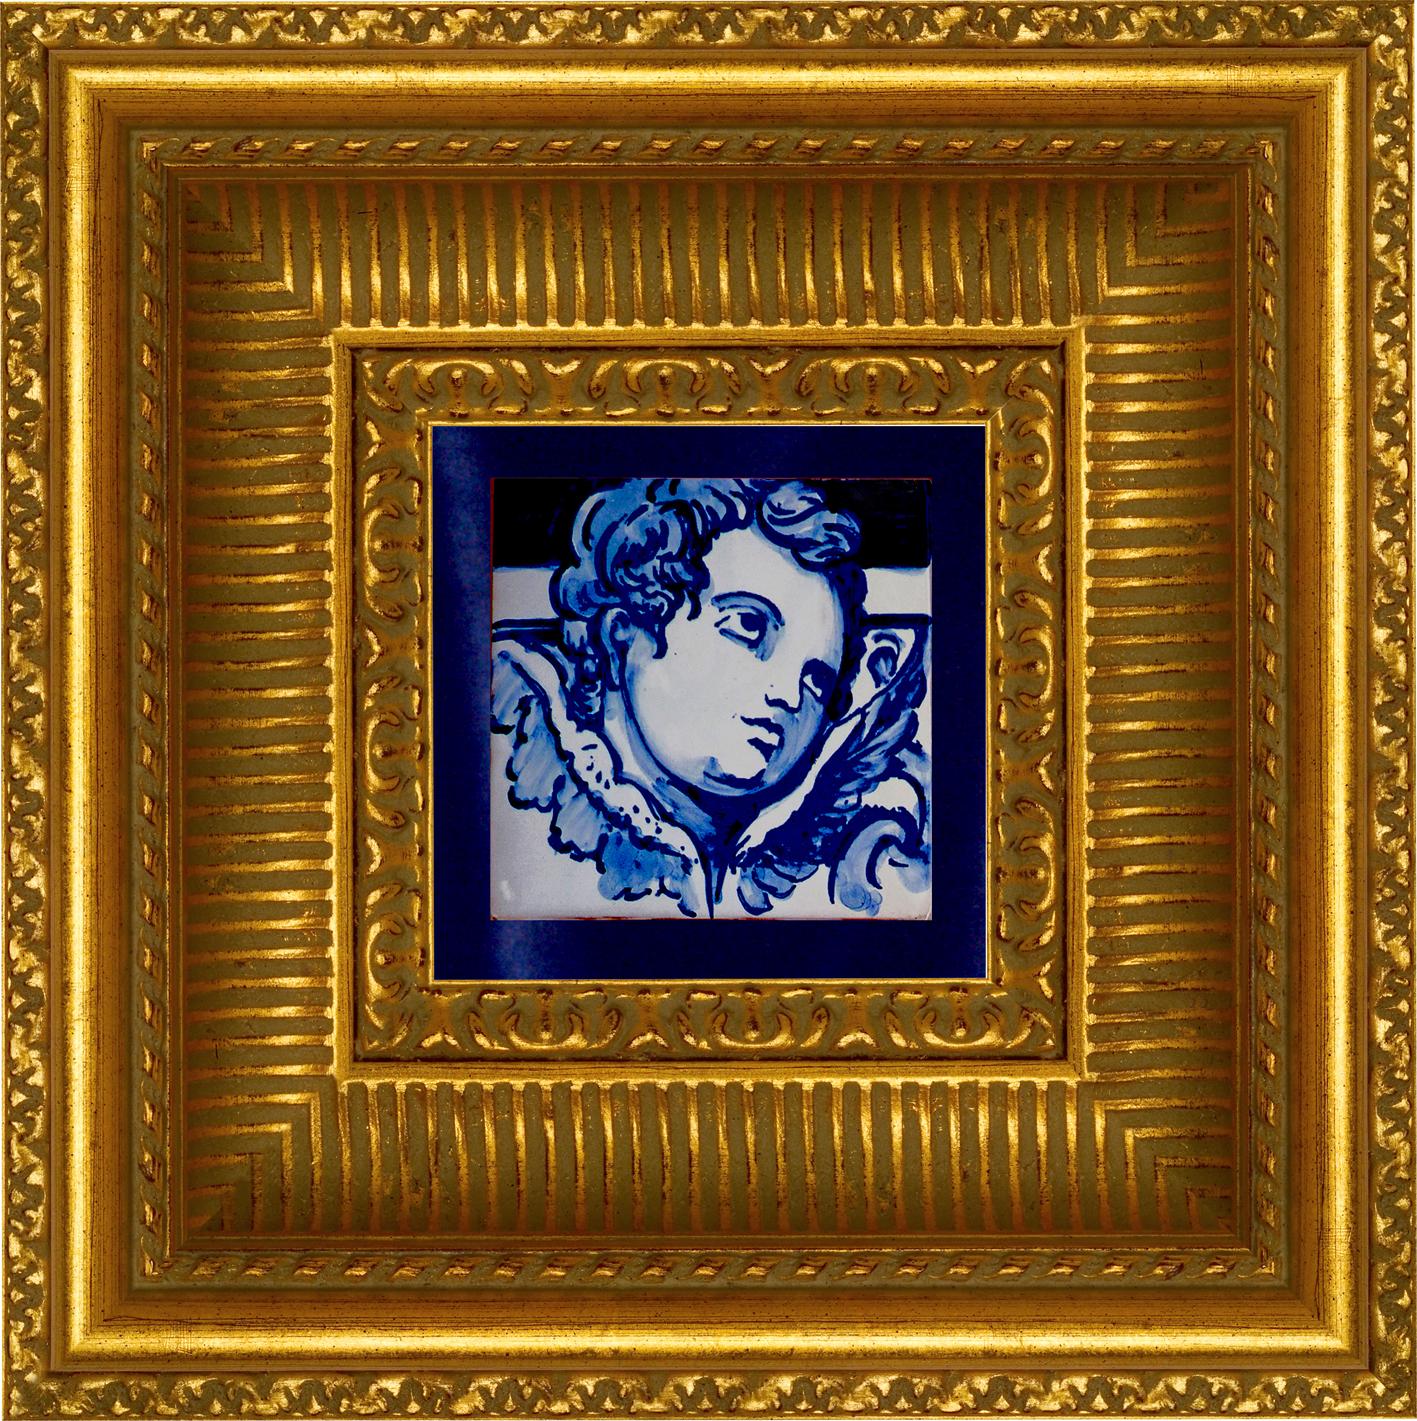 Superbe carreau de céramique portugais/azulejo bleu peint à la main, de style baroque, représentant un angelot ou un ange, datant du 18e siècle
Le carreau peint en bleu cobalt sur fond blanc, typique du Portugal du XVIIIe siècle, a donné le goût